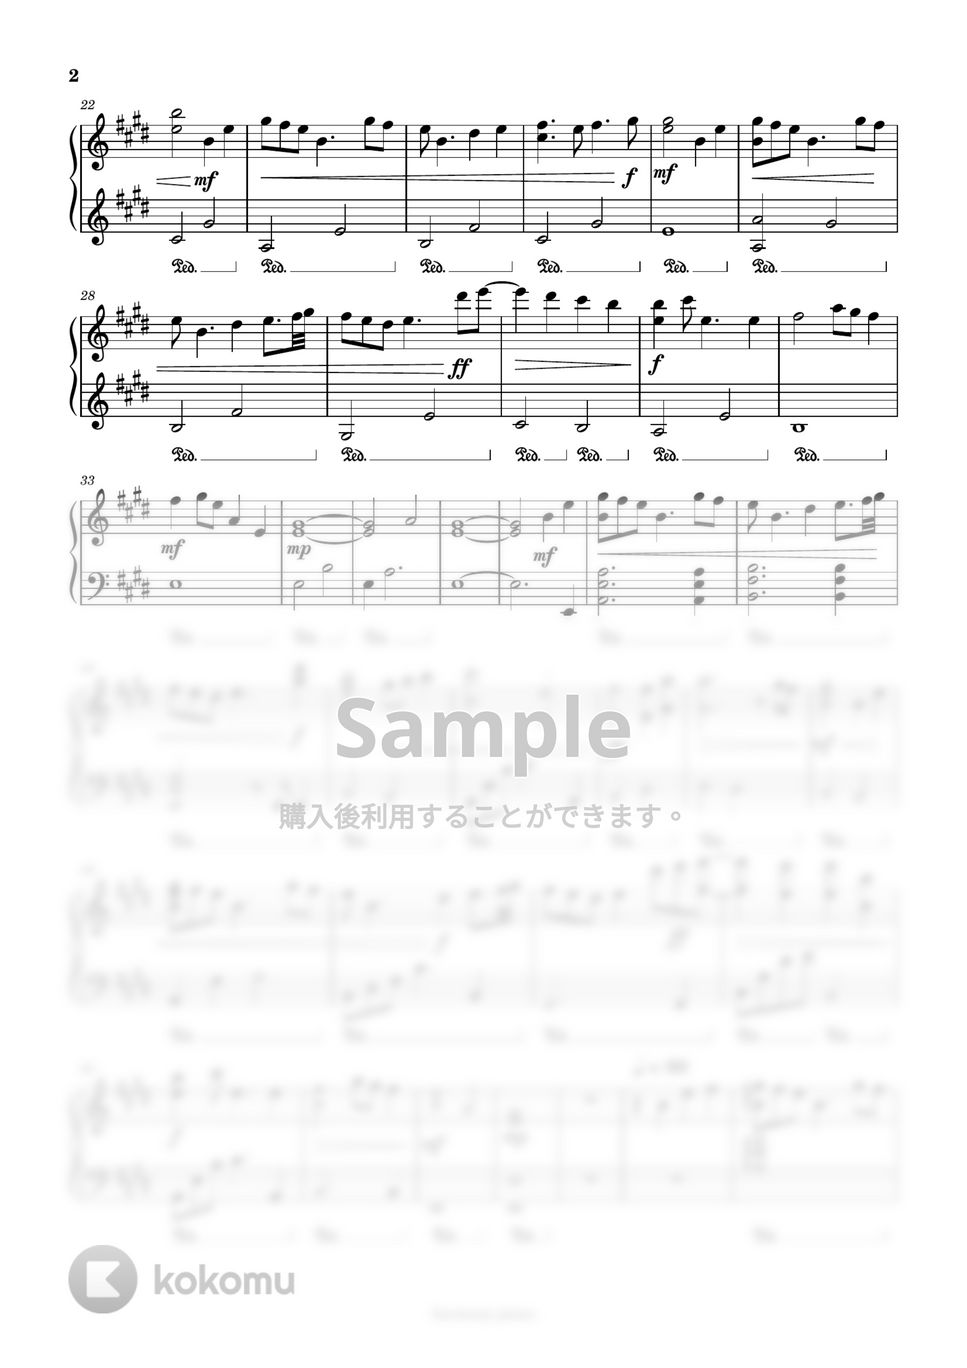 silent - メインテーマ (目黒蓮/川口春奈) by harmony piano